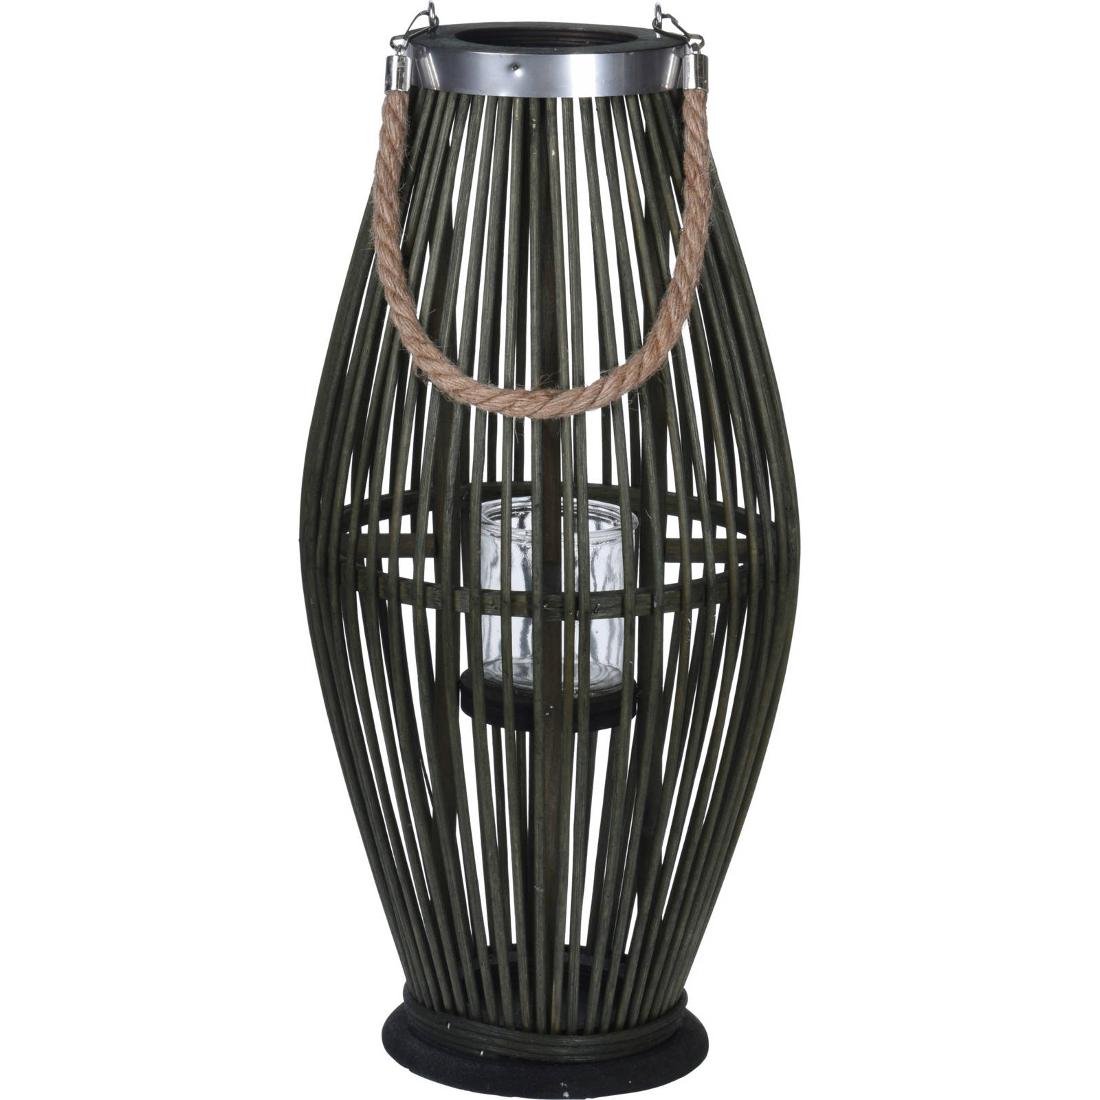 Lampion bambusowy ze sznurem 24 x 48 cm zielony 435000370